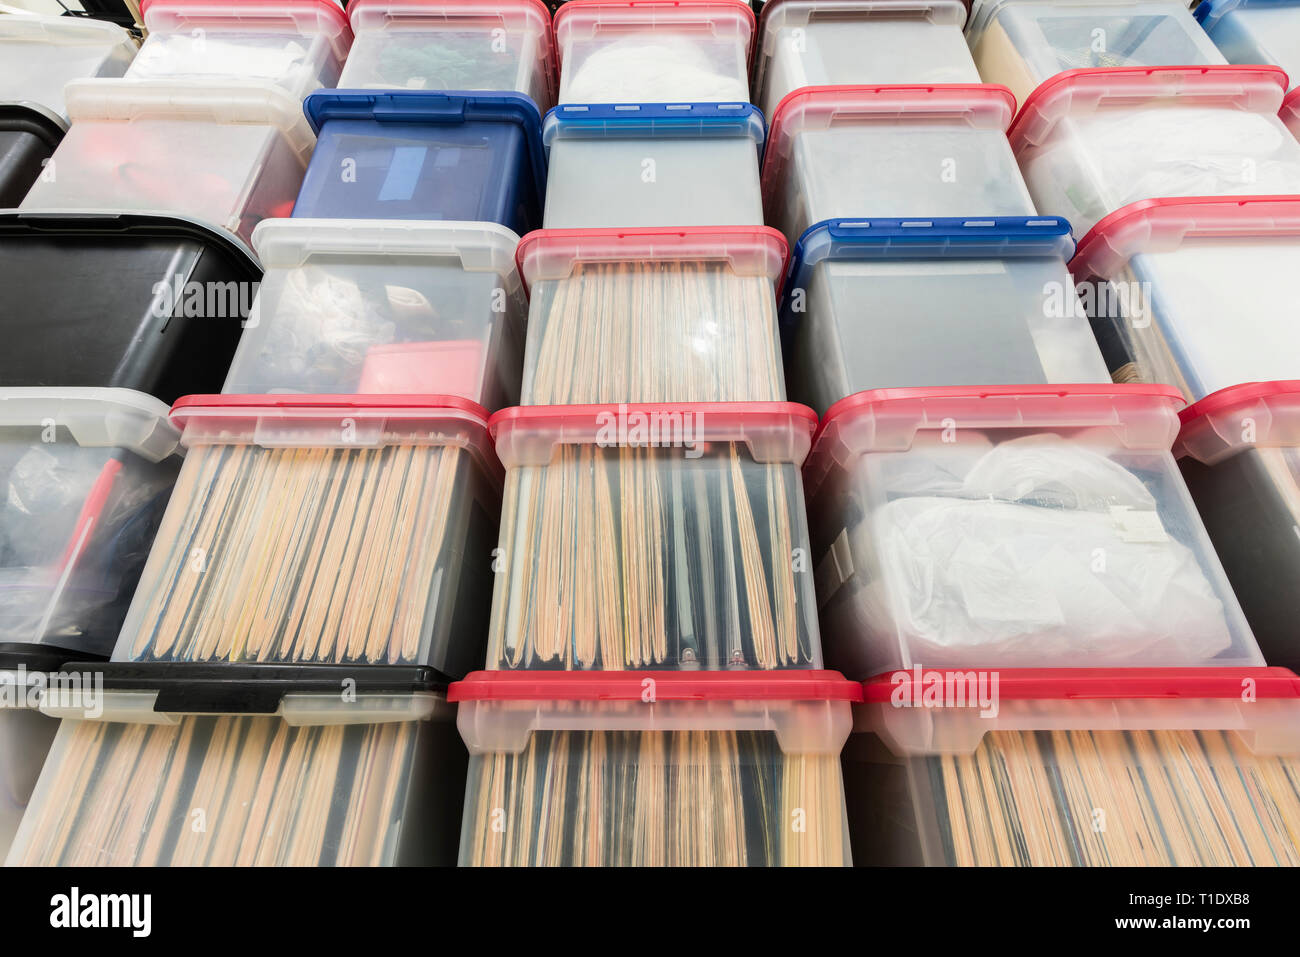 Mur de boîtes de stockage de fichier en plastique avec les dossiers, classeurs et fournitures diverses. Banque D'Images